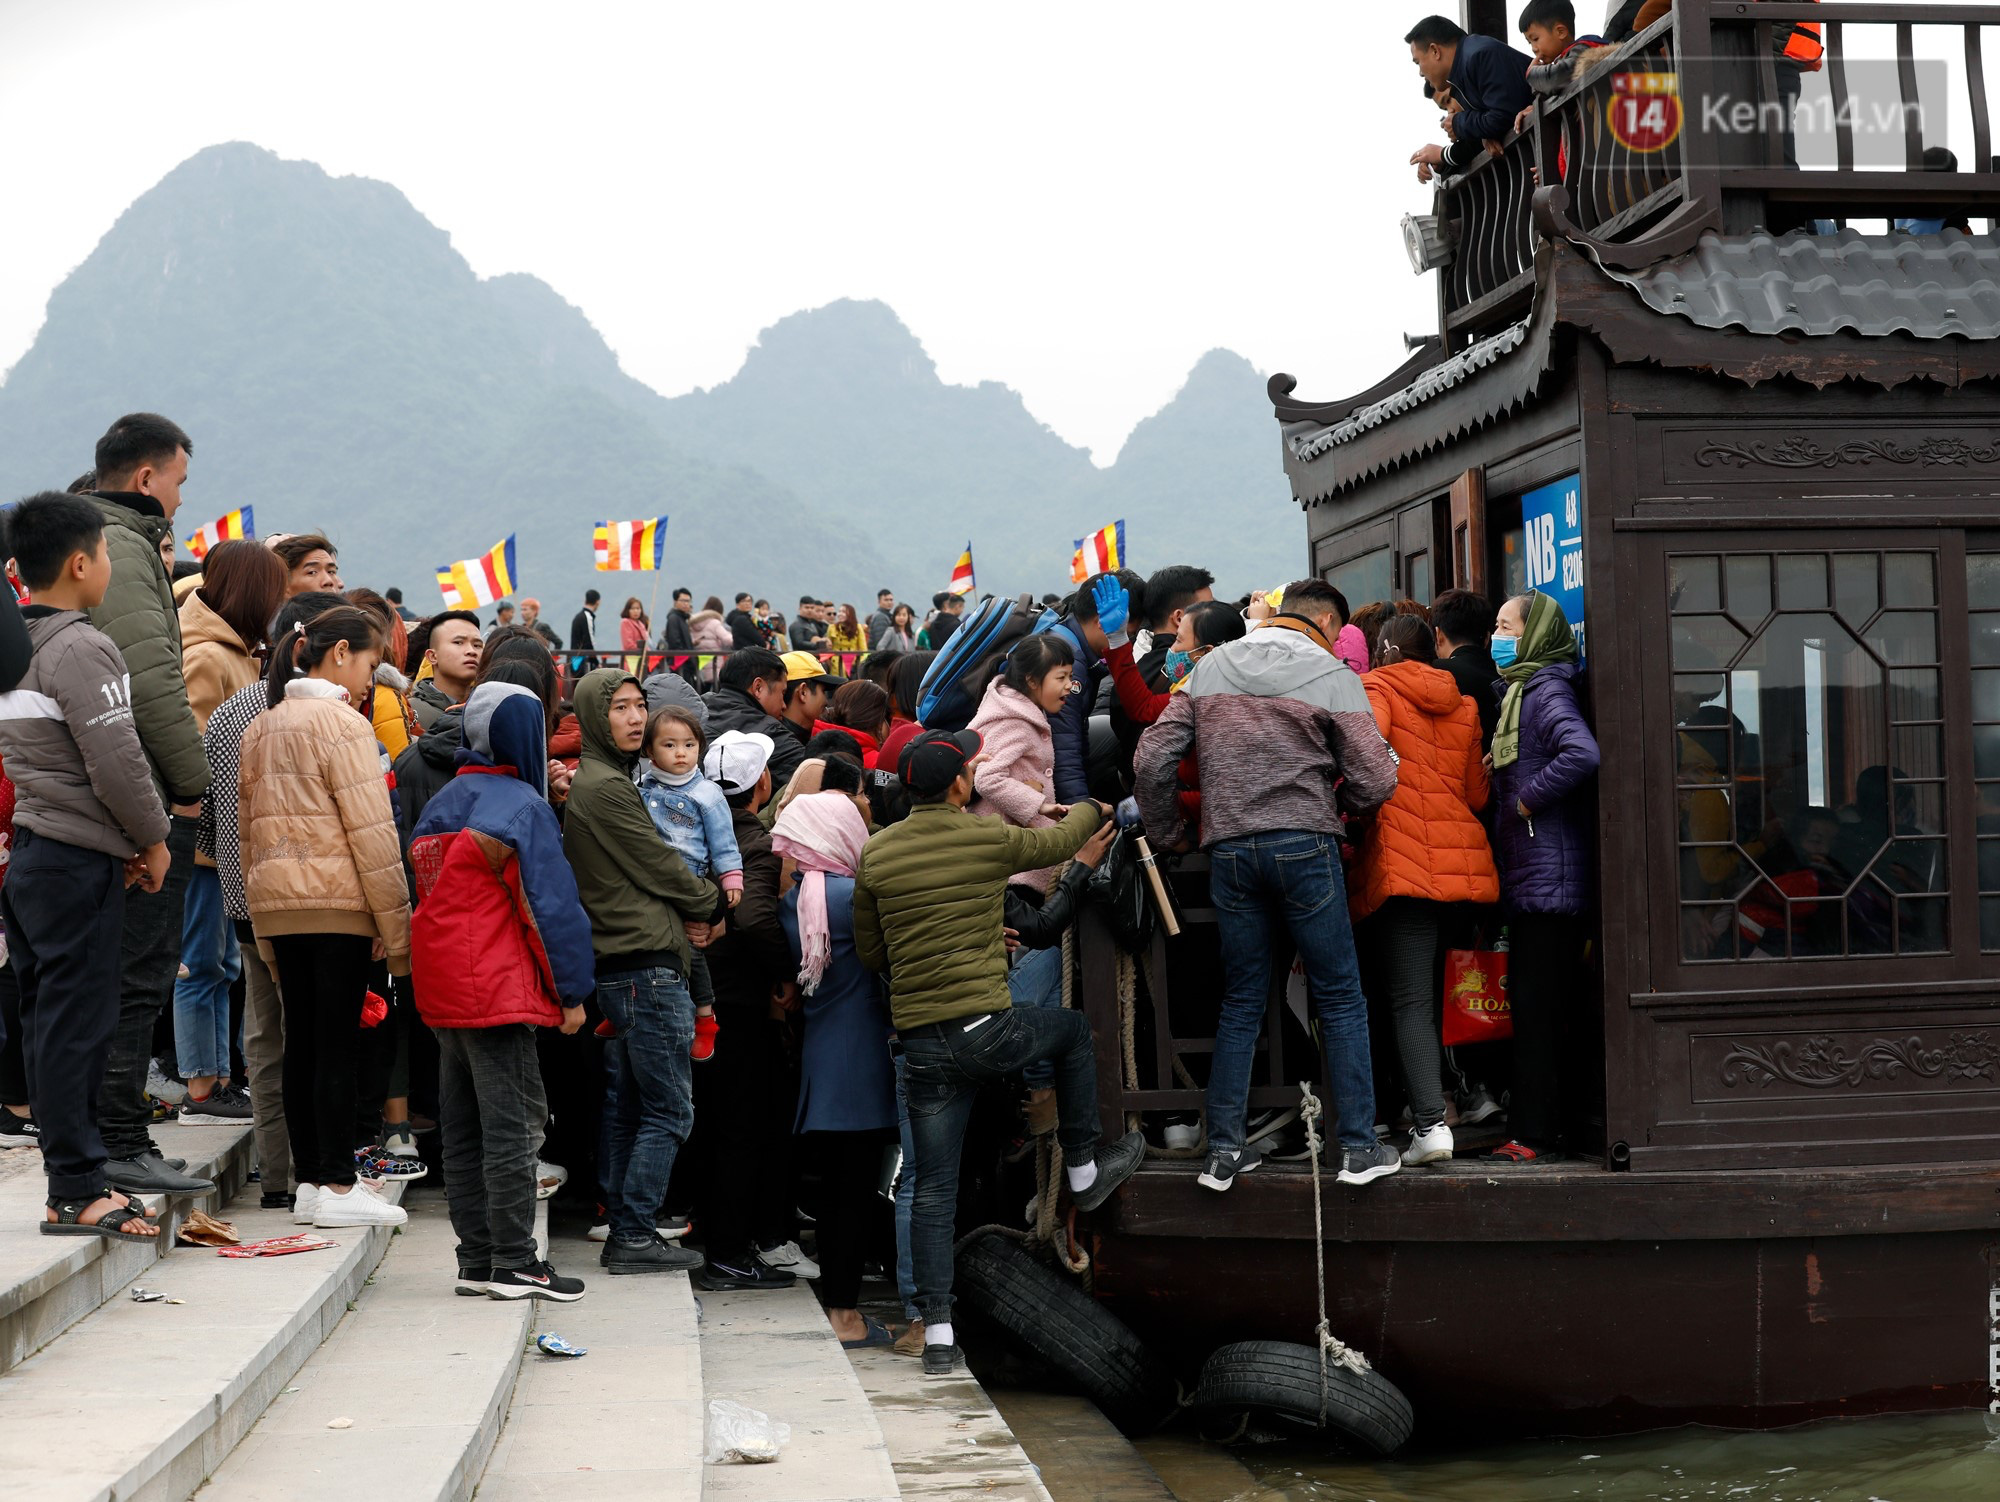 Du khách, phật tử chen nhau lên thuyền và xe điện, gây tình cảnh hỗn loạn và quá tải ở ngôi chùa lớn nhất thế giới tại Việt Nam - Ảnh 4.